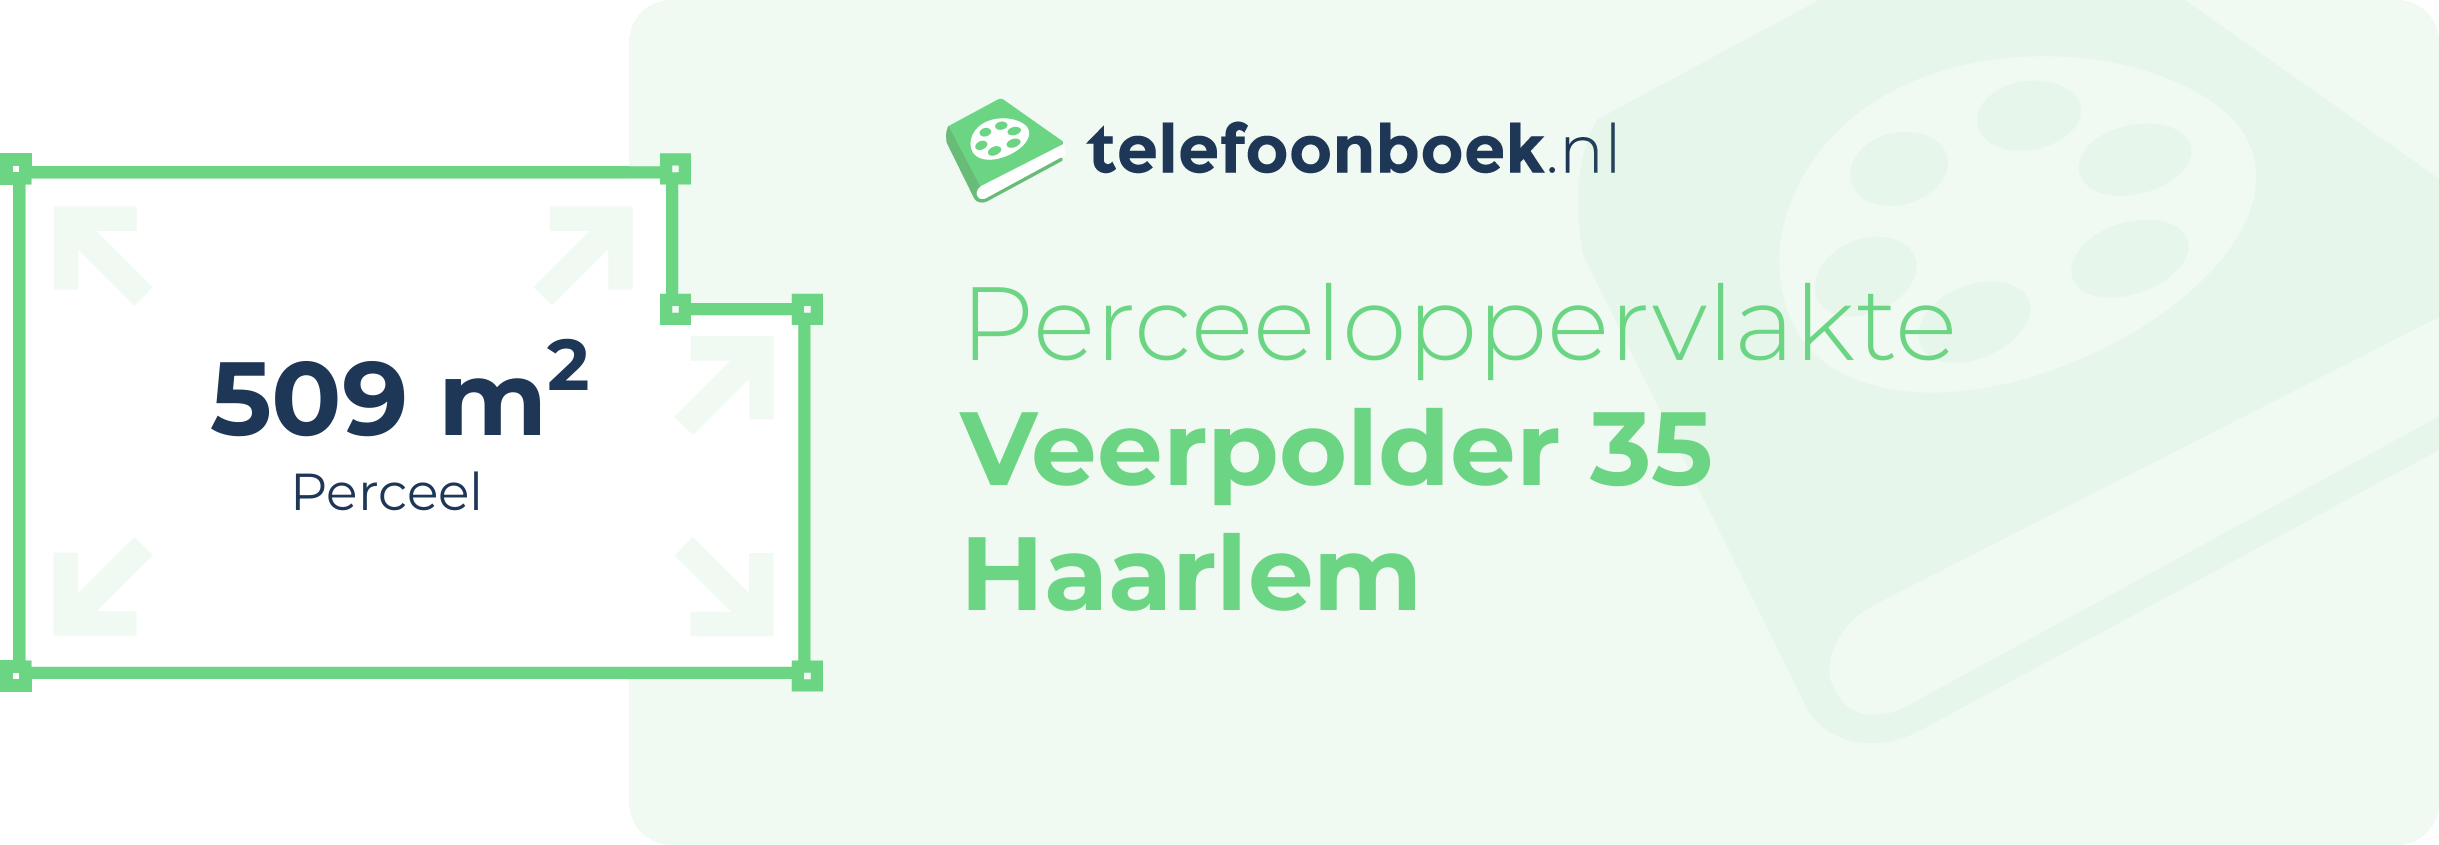 Perceeloppervlakte Veerpolder 35 Haarlem